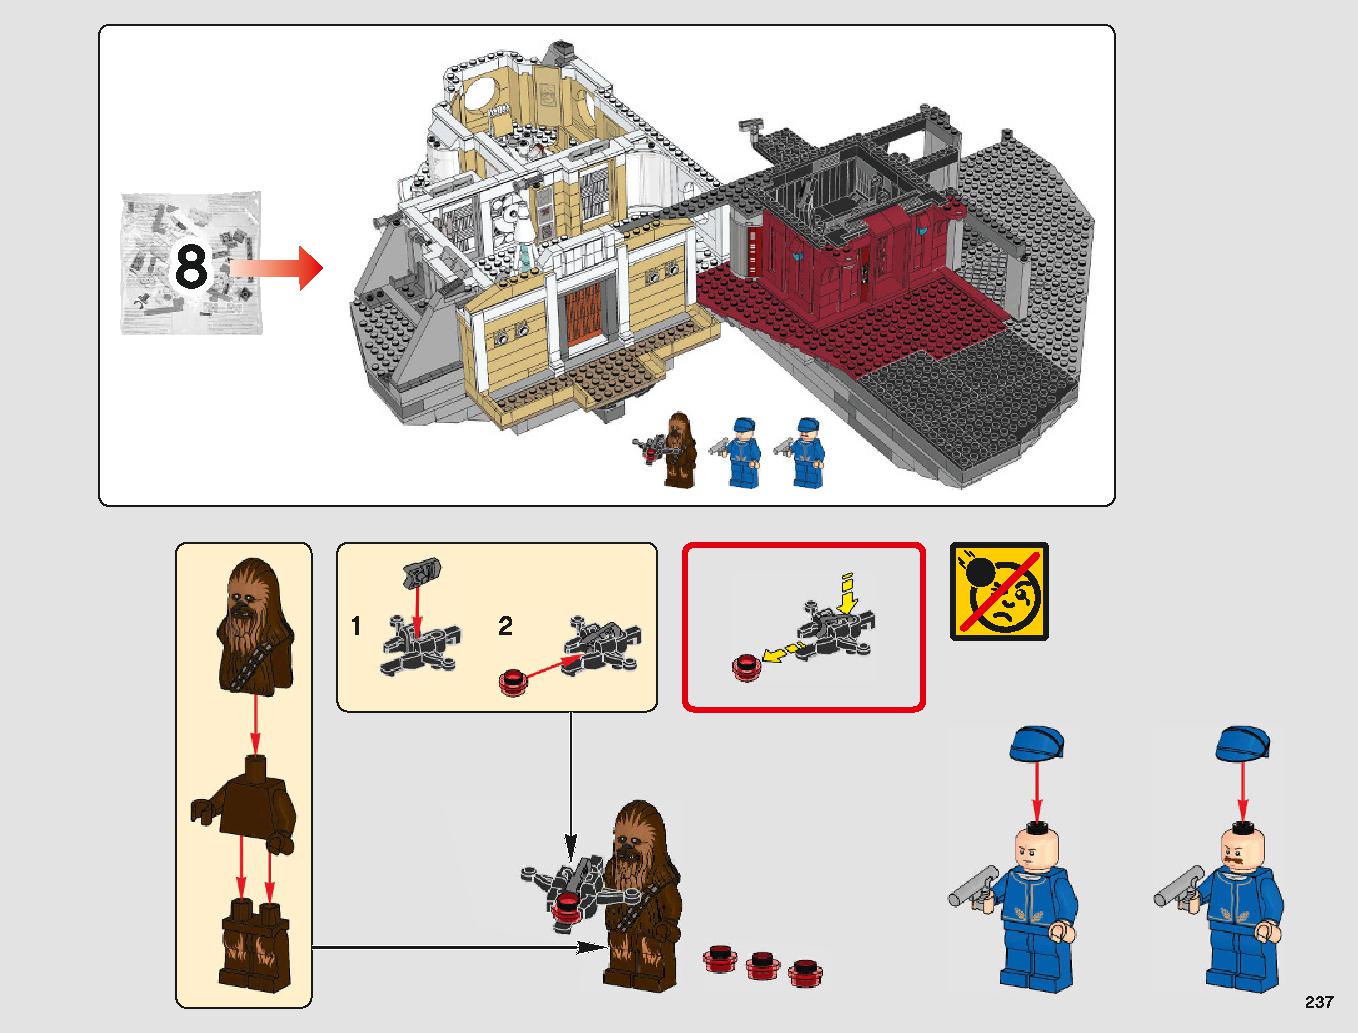 クラウド・シティ 75222 レゴの商品情報 レゴの説明書・組立方法 237 page